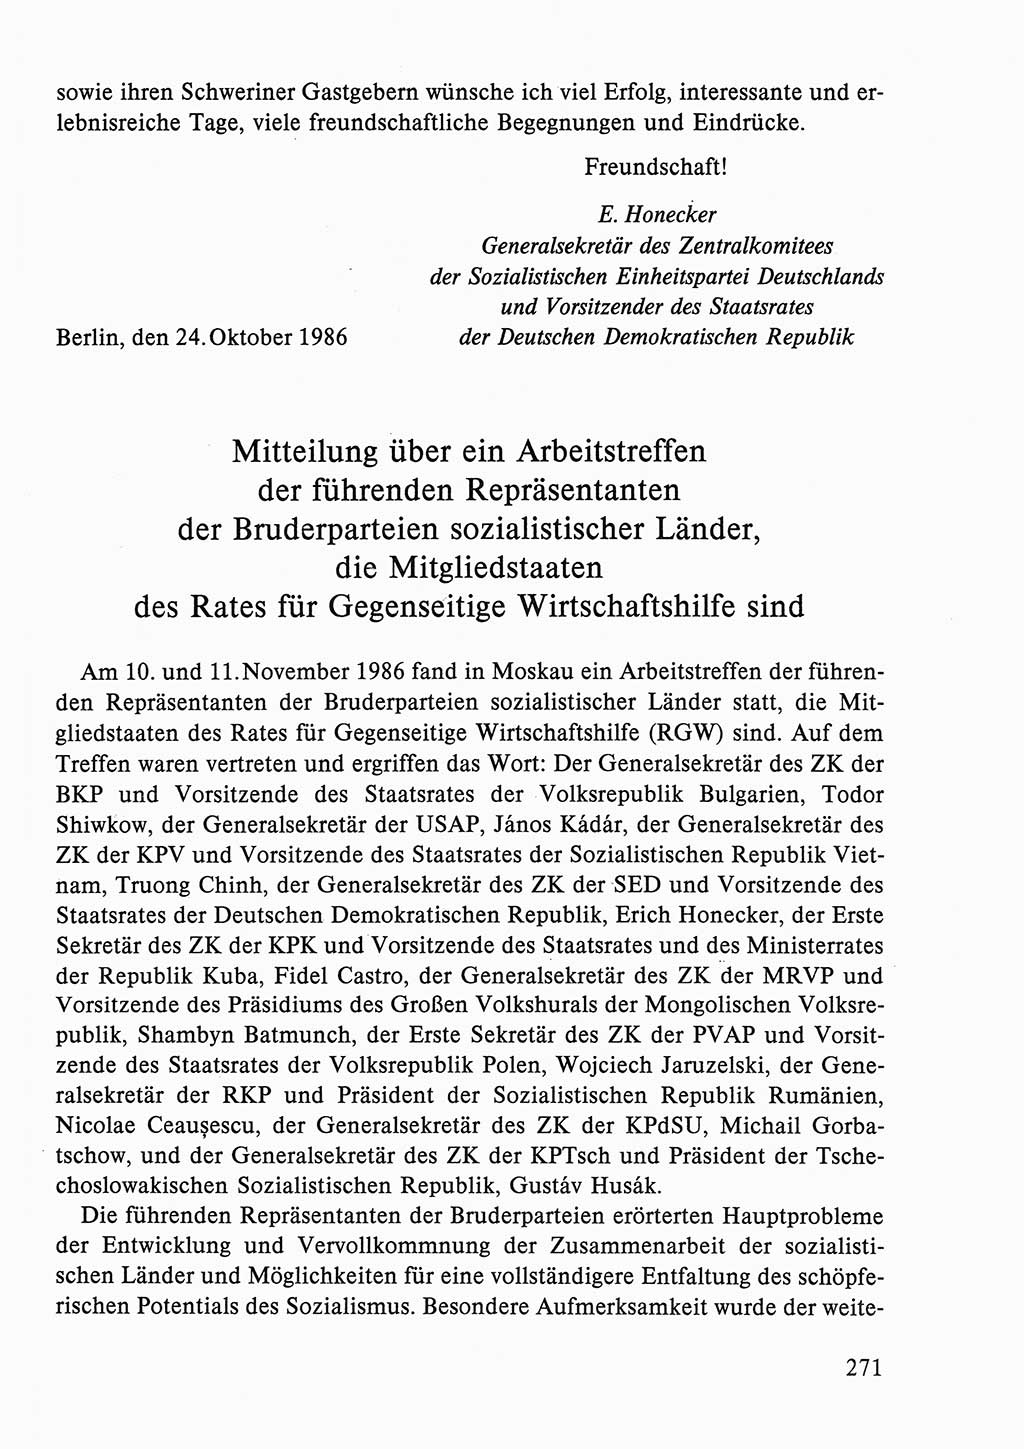 Dokumente der Sozialistischen Einheitspartei Deutschlands (SED) [Deutsche Demokratische Republik (DDR)] 1986-1987, Seite 271 (Dok. SED DDR 1986-1987, S. 271)